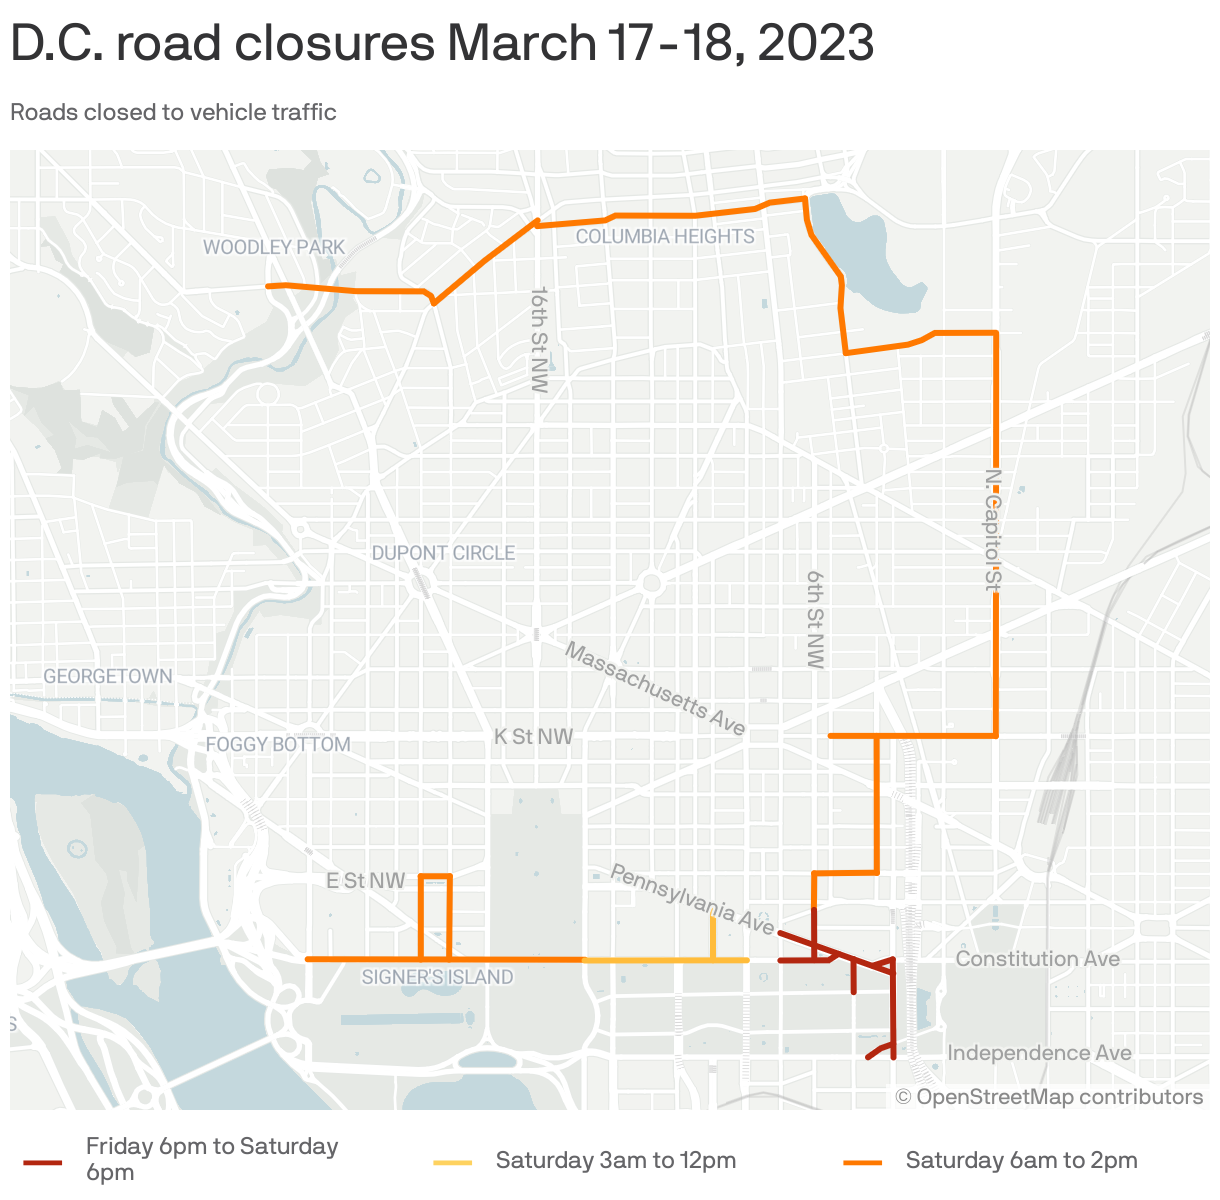 D.C. road closures March 17-18, 2023